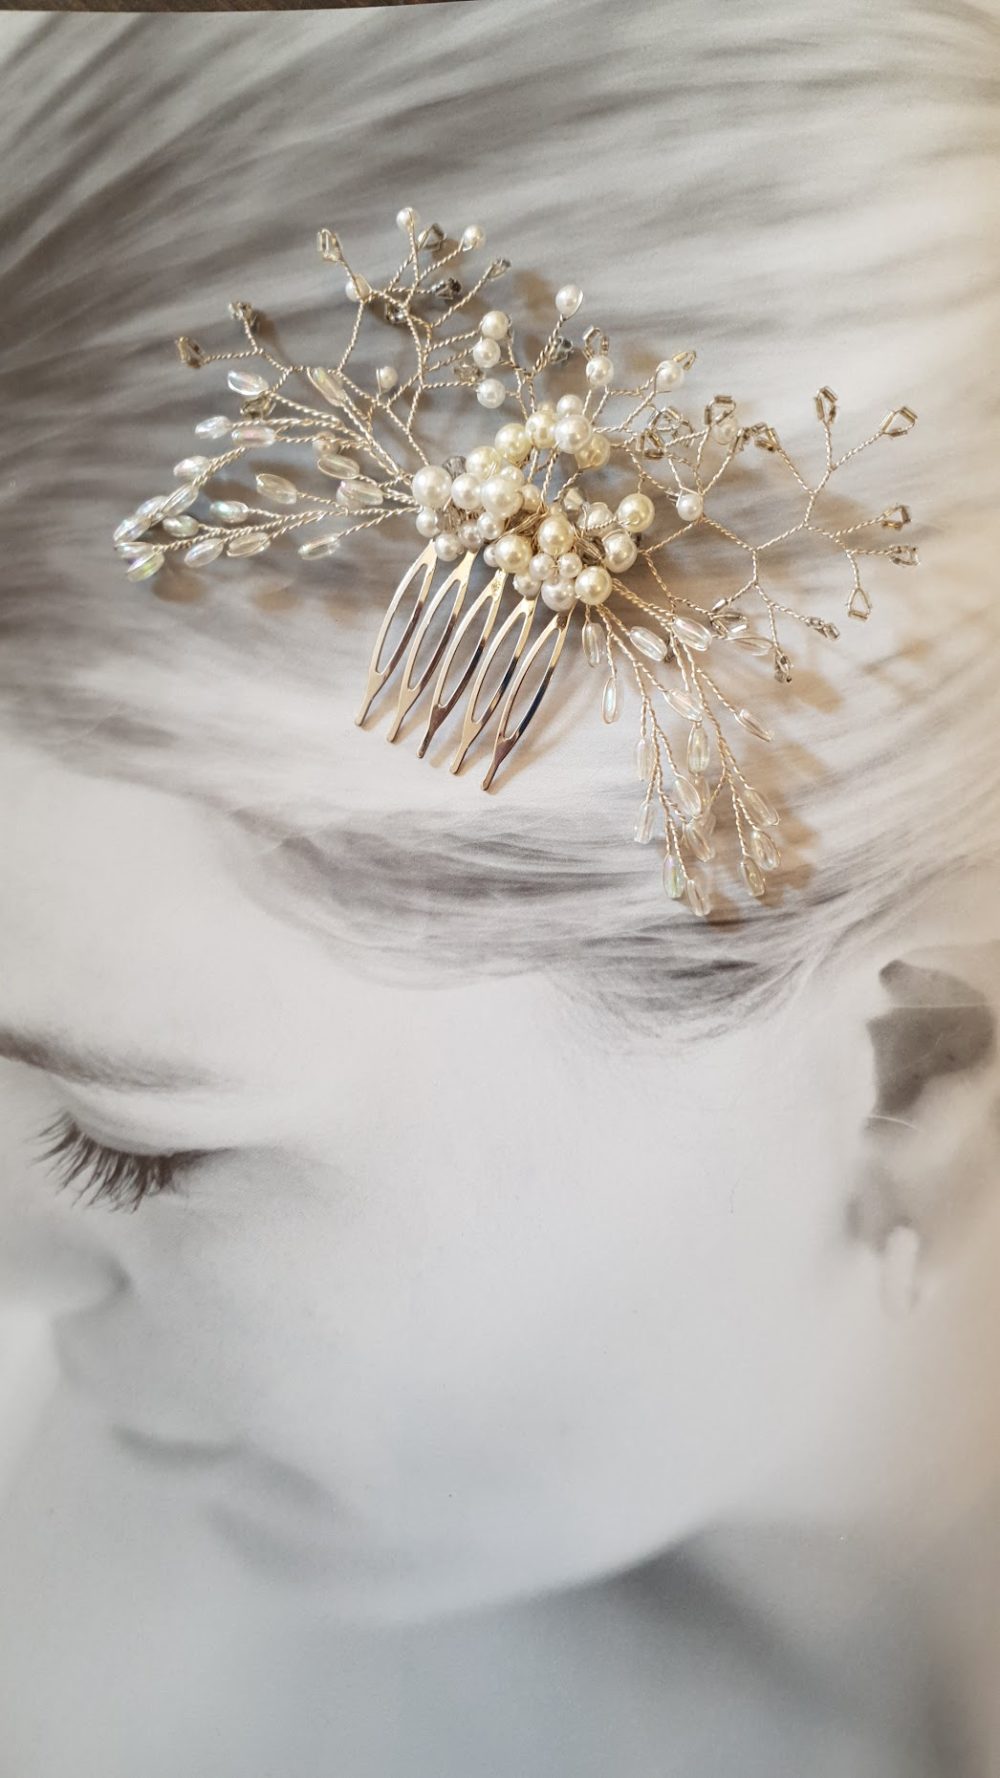 Håndlavet hårsmykke med perler på kam. Designet af Karina Bentzen.